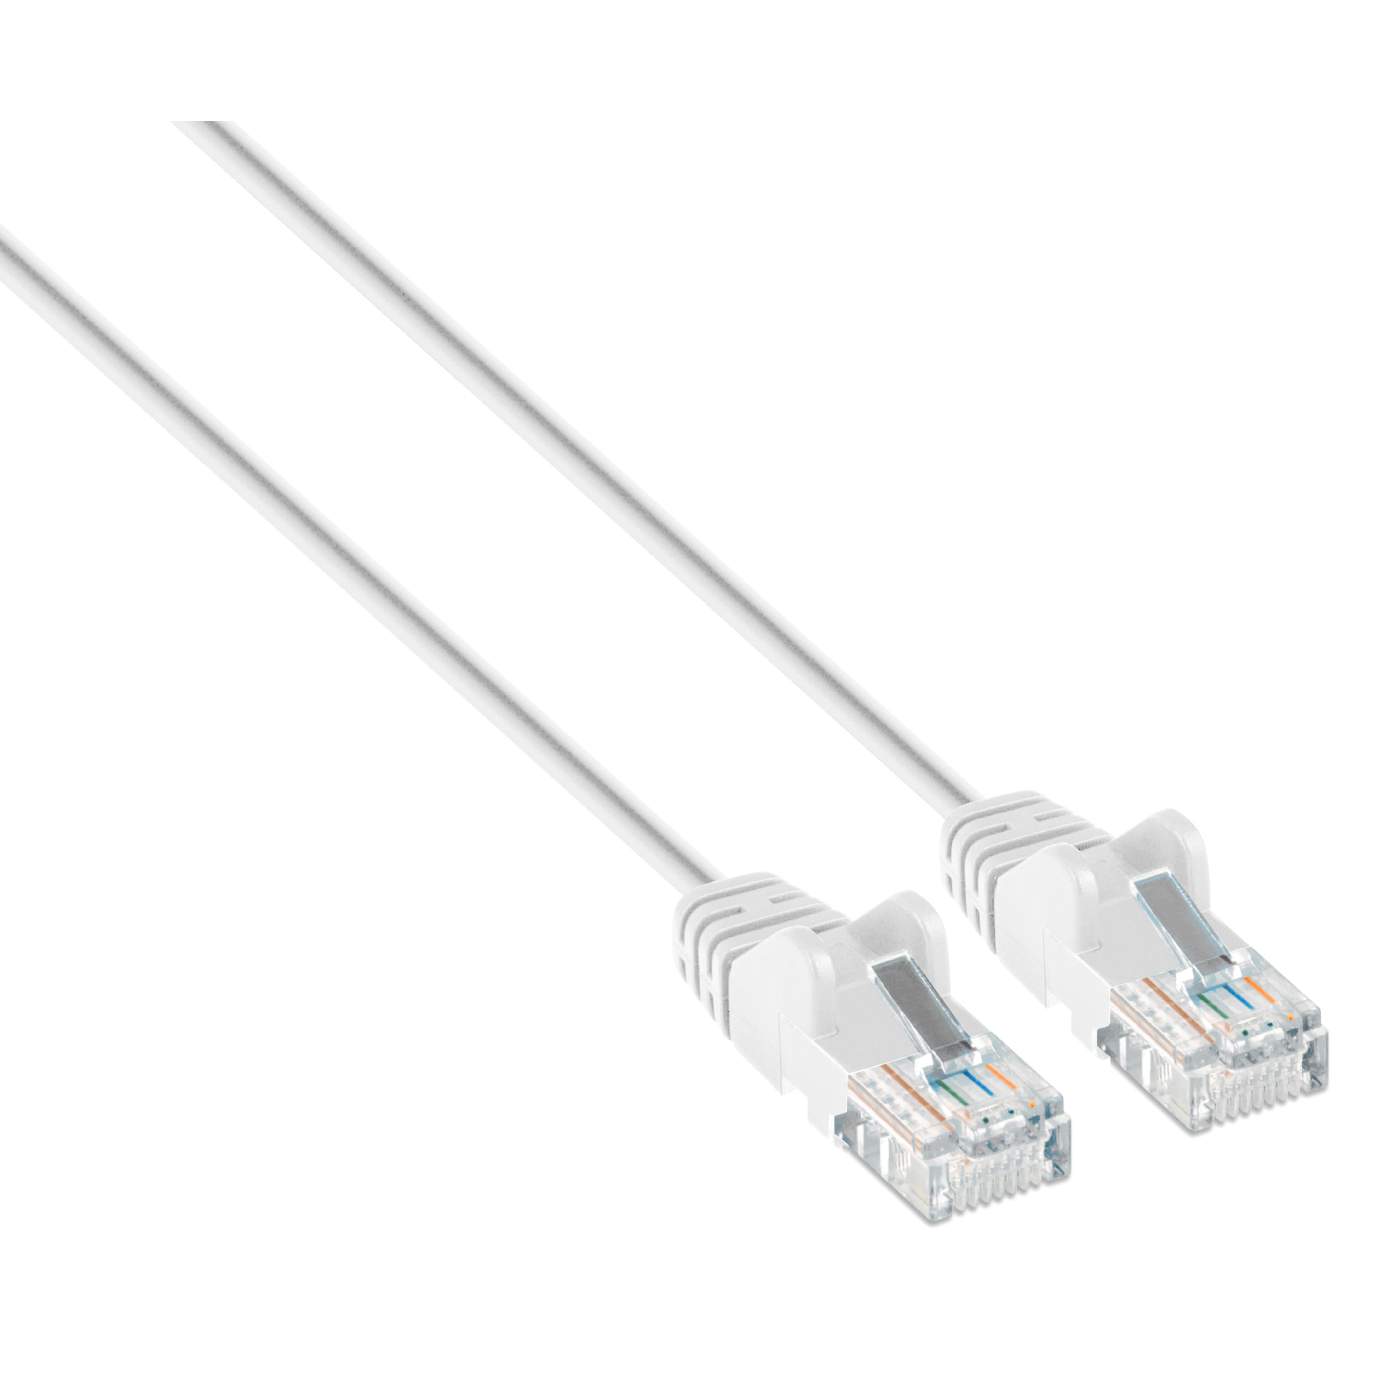 Câbles réseau INTELLINET Cable RJ45 cat 6 SFTP 1m bleu - Scoop gaming